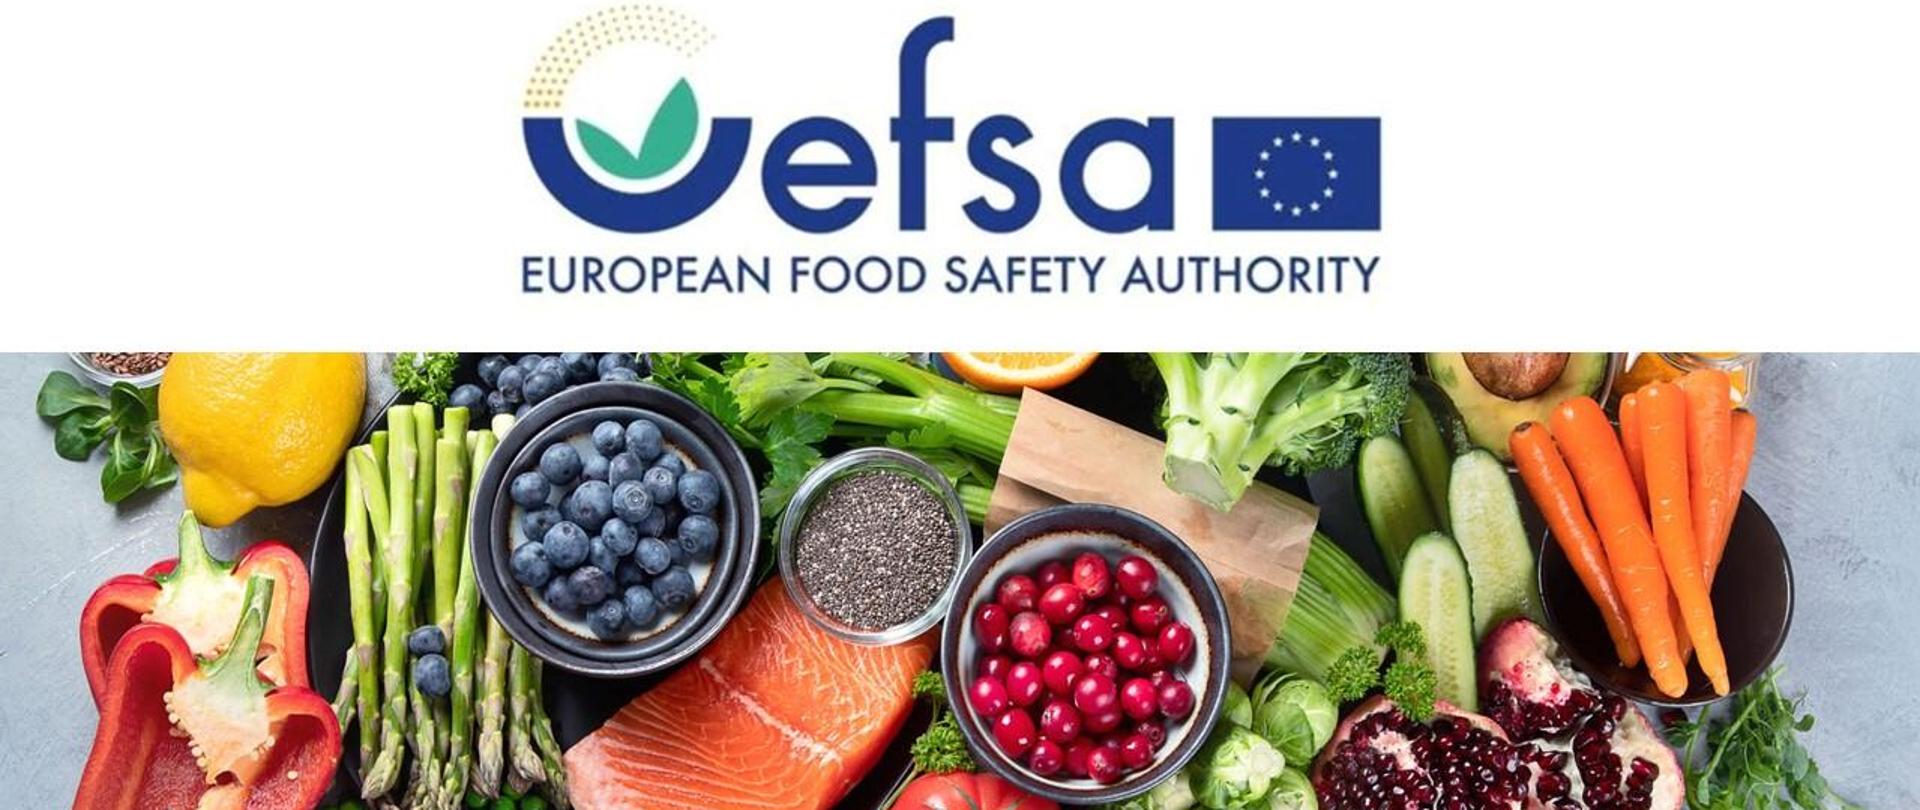 logo EFSA (European Food Safety Authority) Europejski Urząd do spraw Bezpieczeństwa Żywności, zdjęcie różnych owoców i warzyw